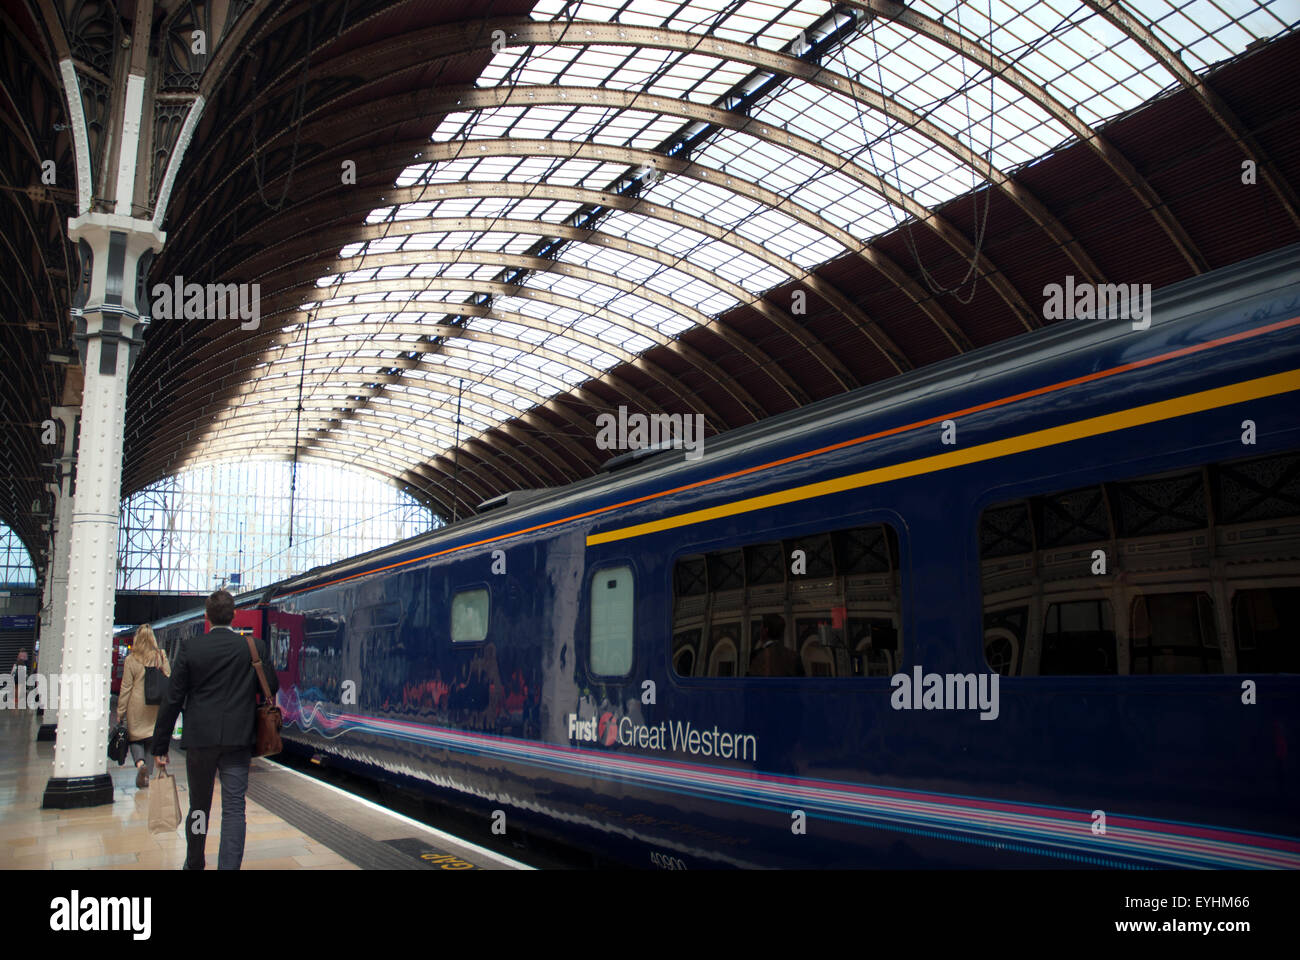 Les trains en attente à la plate-forme de la gare de Paddington, à l'ouest de Londres Angleterre Royaume-uni Banque D'Images